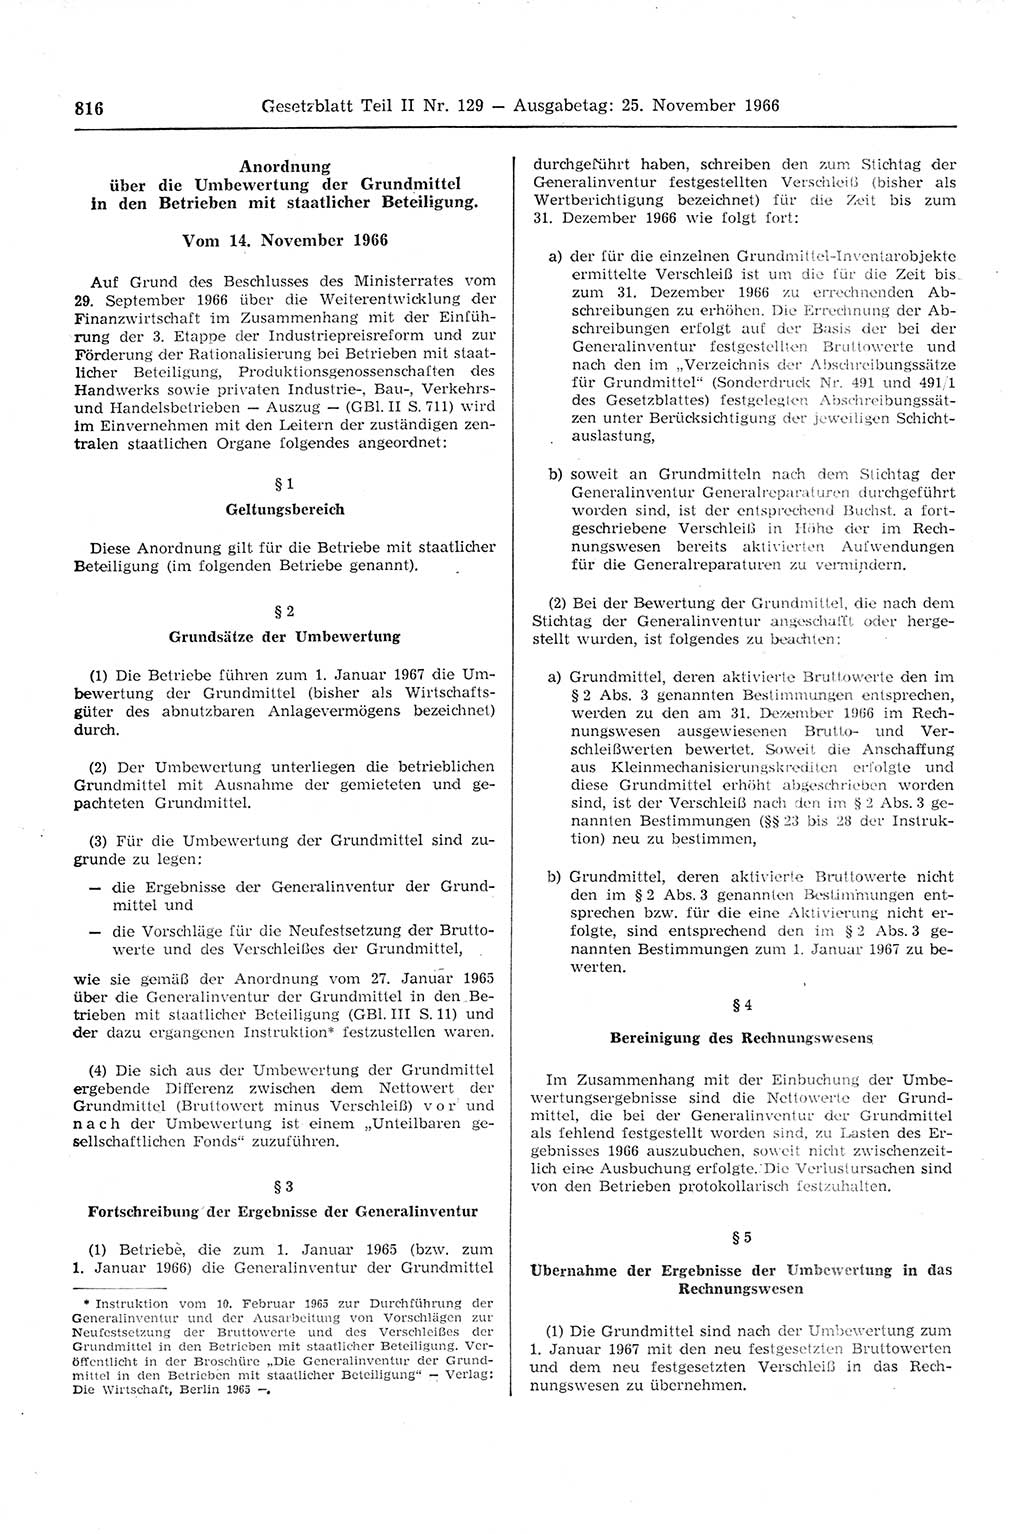 Gesetzblatt (GBl.) der Deutschen Demokratischen Republik (DDR) Teil ⅠⅠ 1966, Seite 816 (GBl. DDR ⅠⅠ 1966, S. 816)